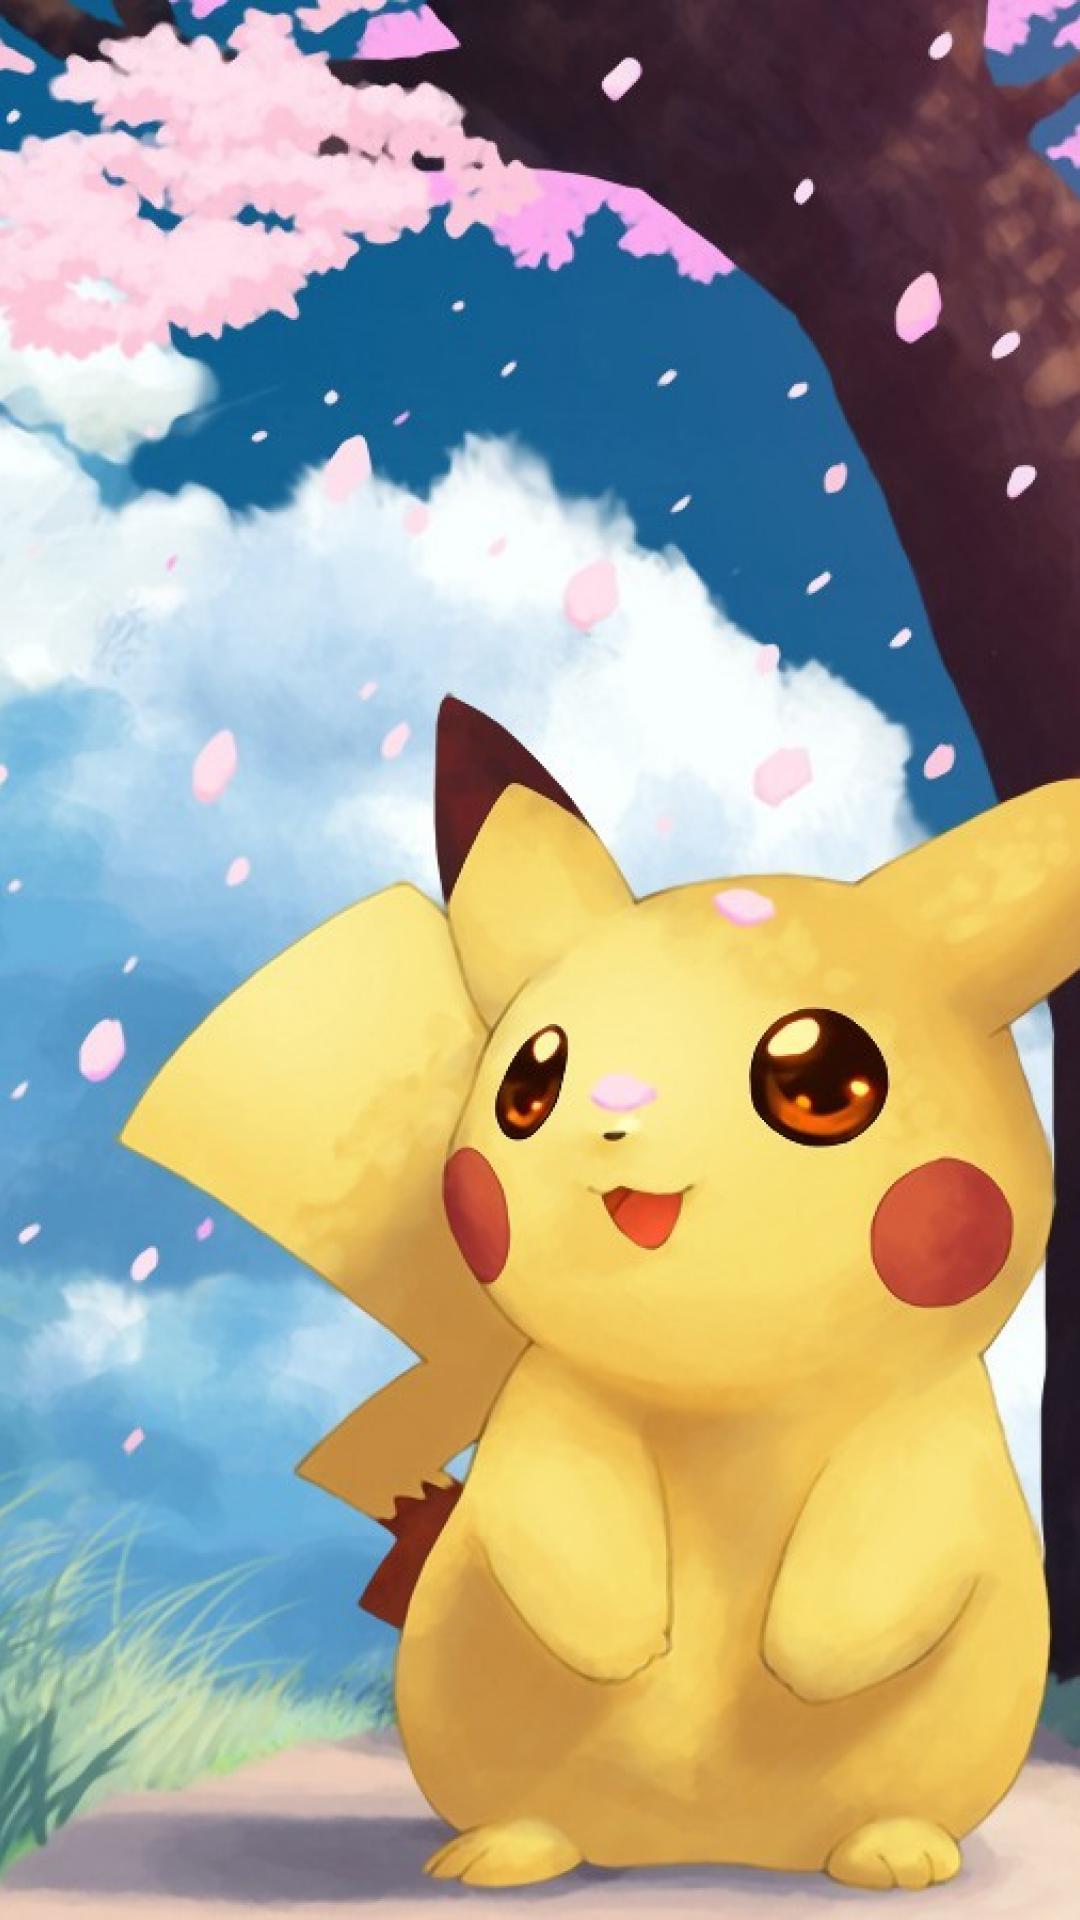 Wallpaper ID 298781  Anime Pokémon Phone Wallpaper Pikachu 1644x3840  free download